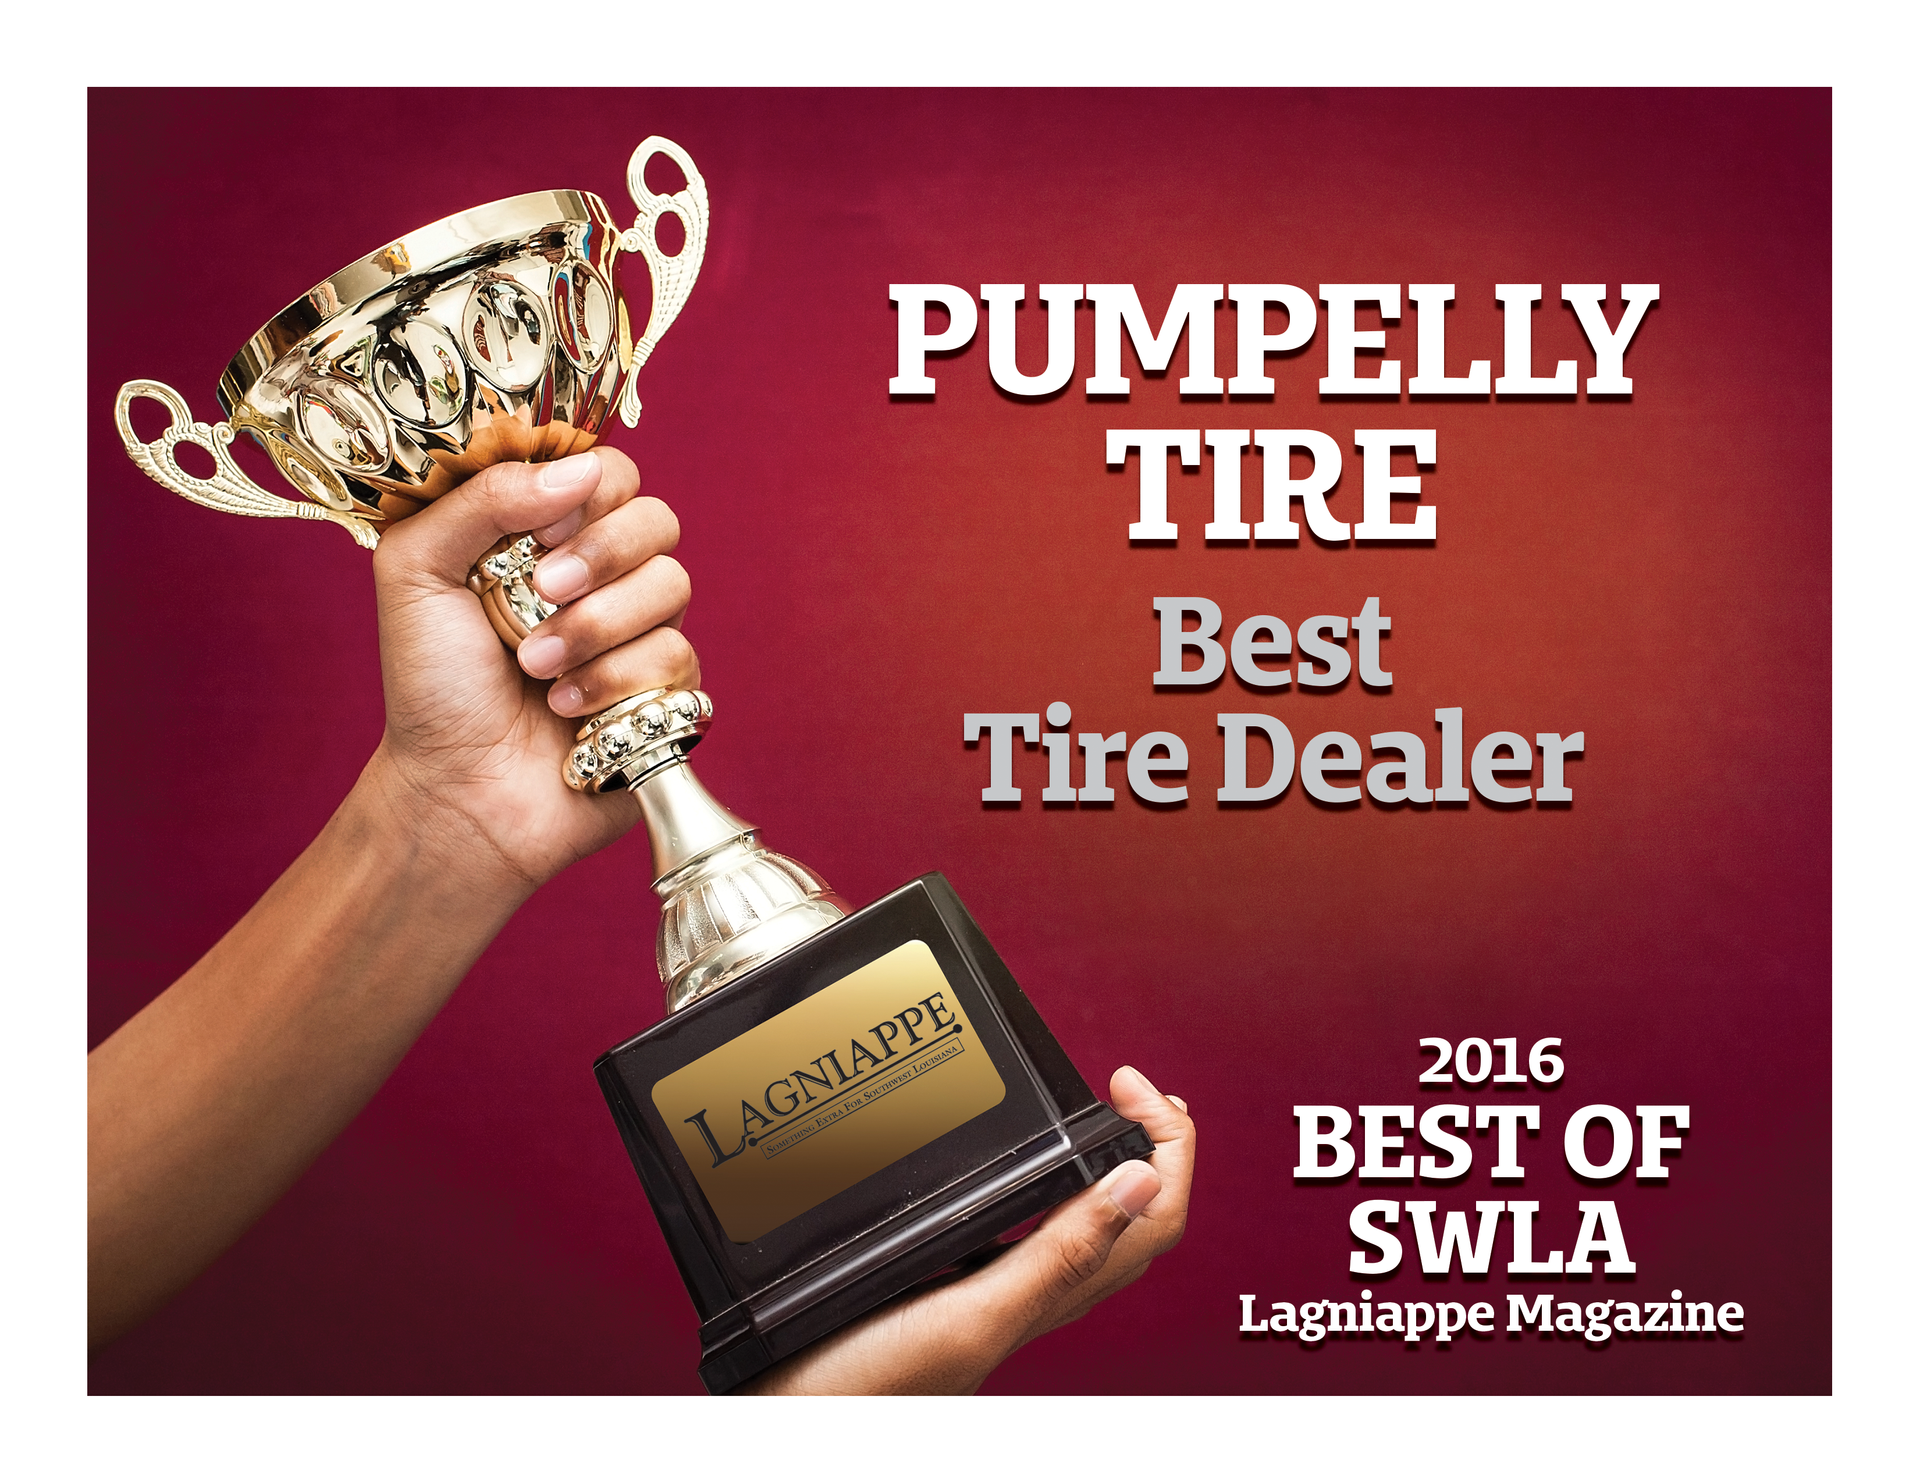 Best Tire Dealer 2016